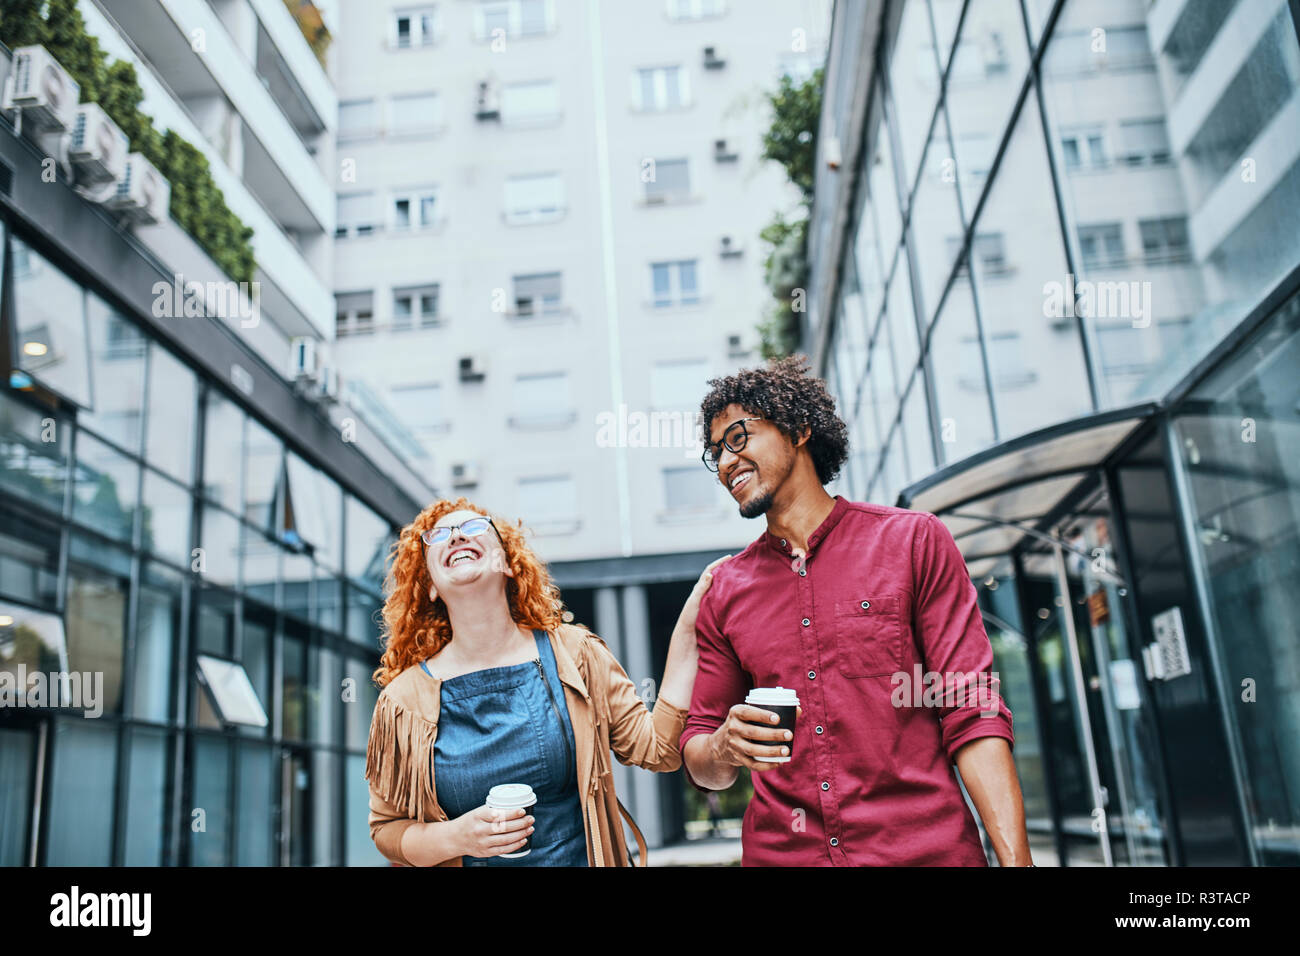 Kollegen gemeinsam zu Fuß in der Stadt, Frau trinkt Kaffee Stockfoto